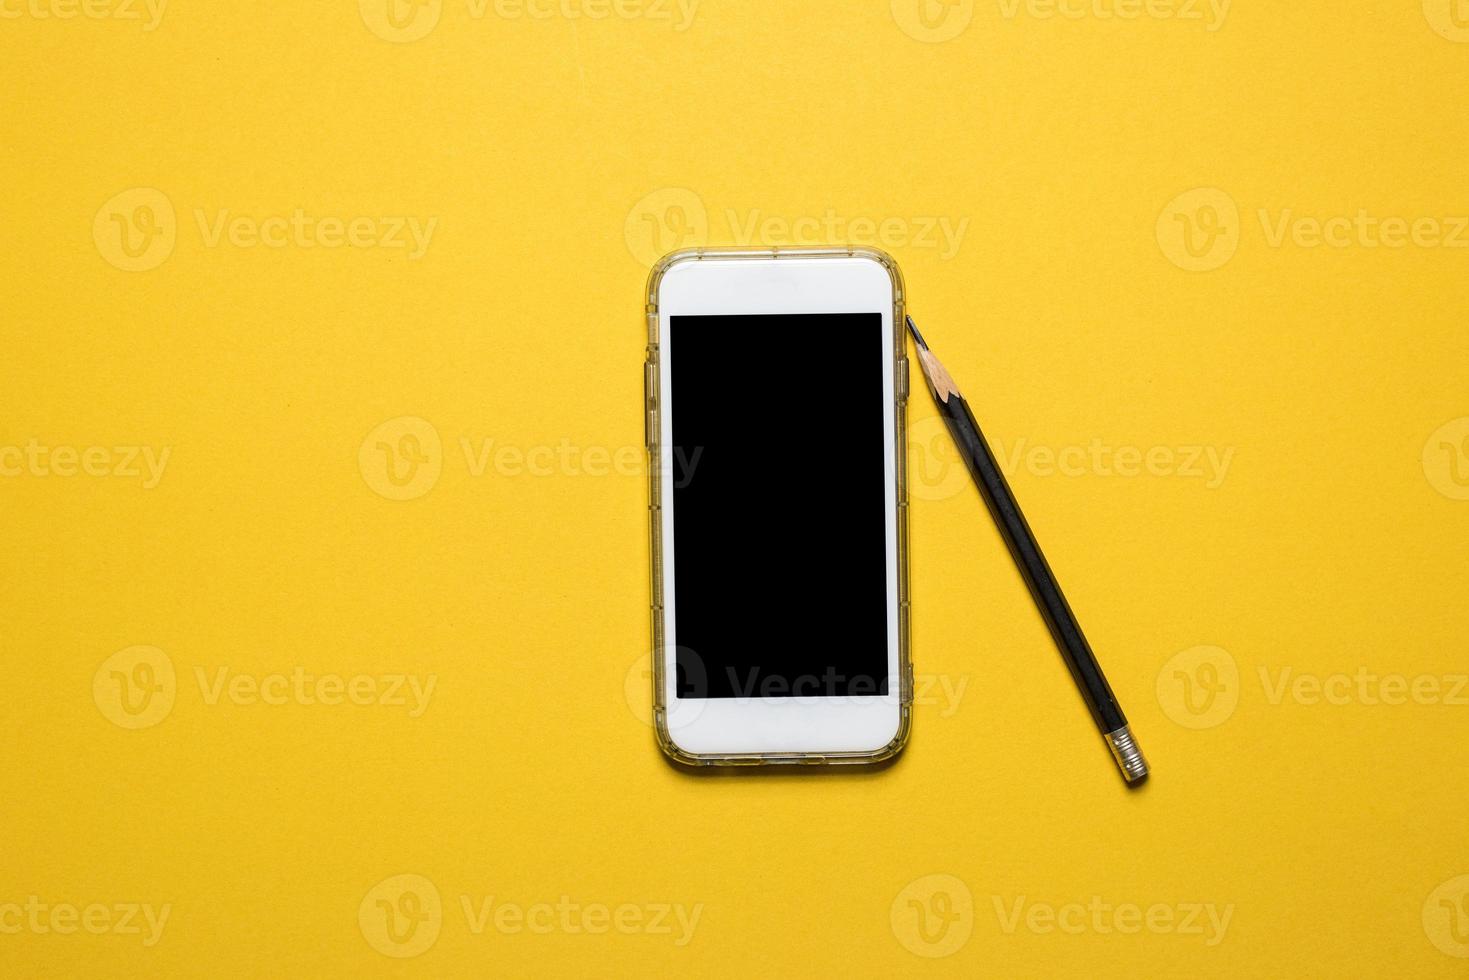 telefone, kommunikationsgeräte auf einem gelben hintergrundtechnologiekonzept mit kopierraum foto